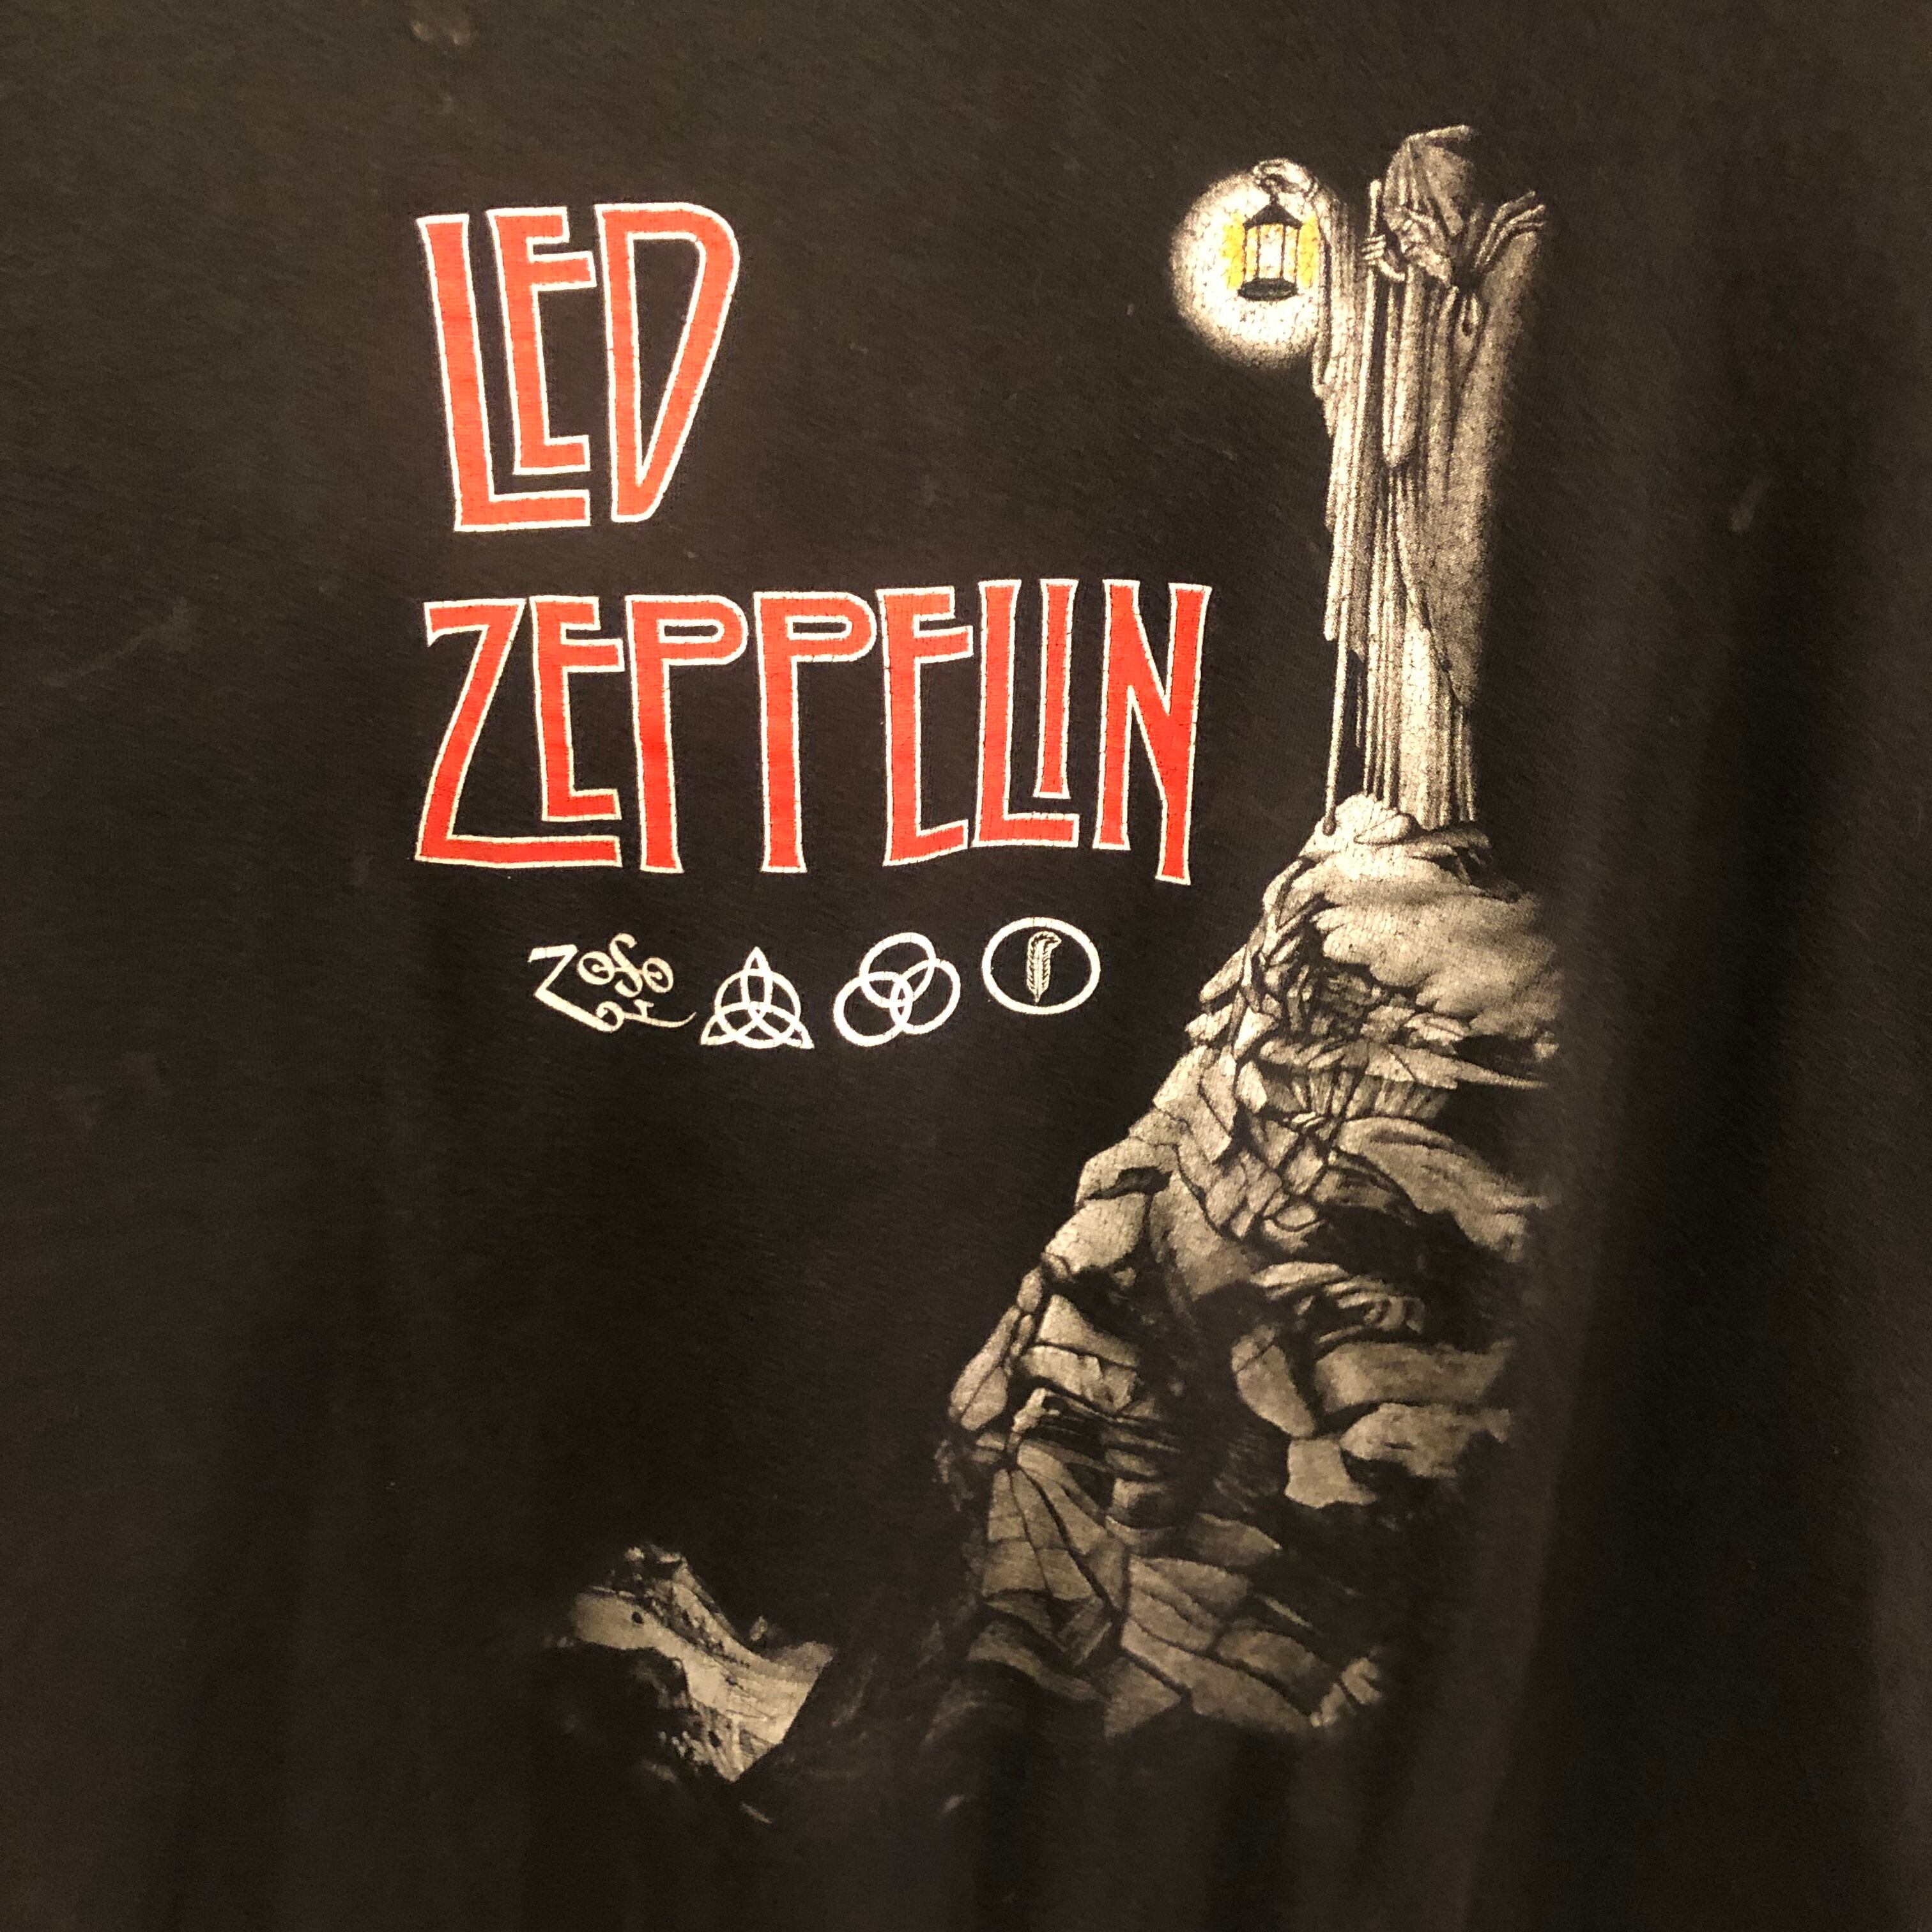 00s Artimonde Led Zeppelin オールド バンド Tシャツ